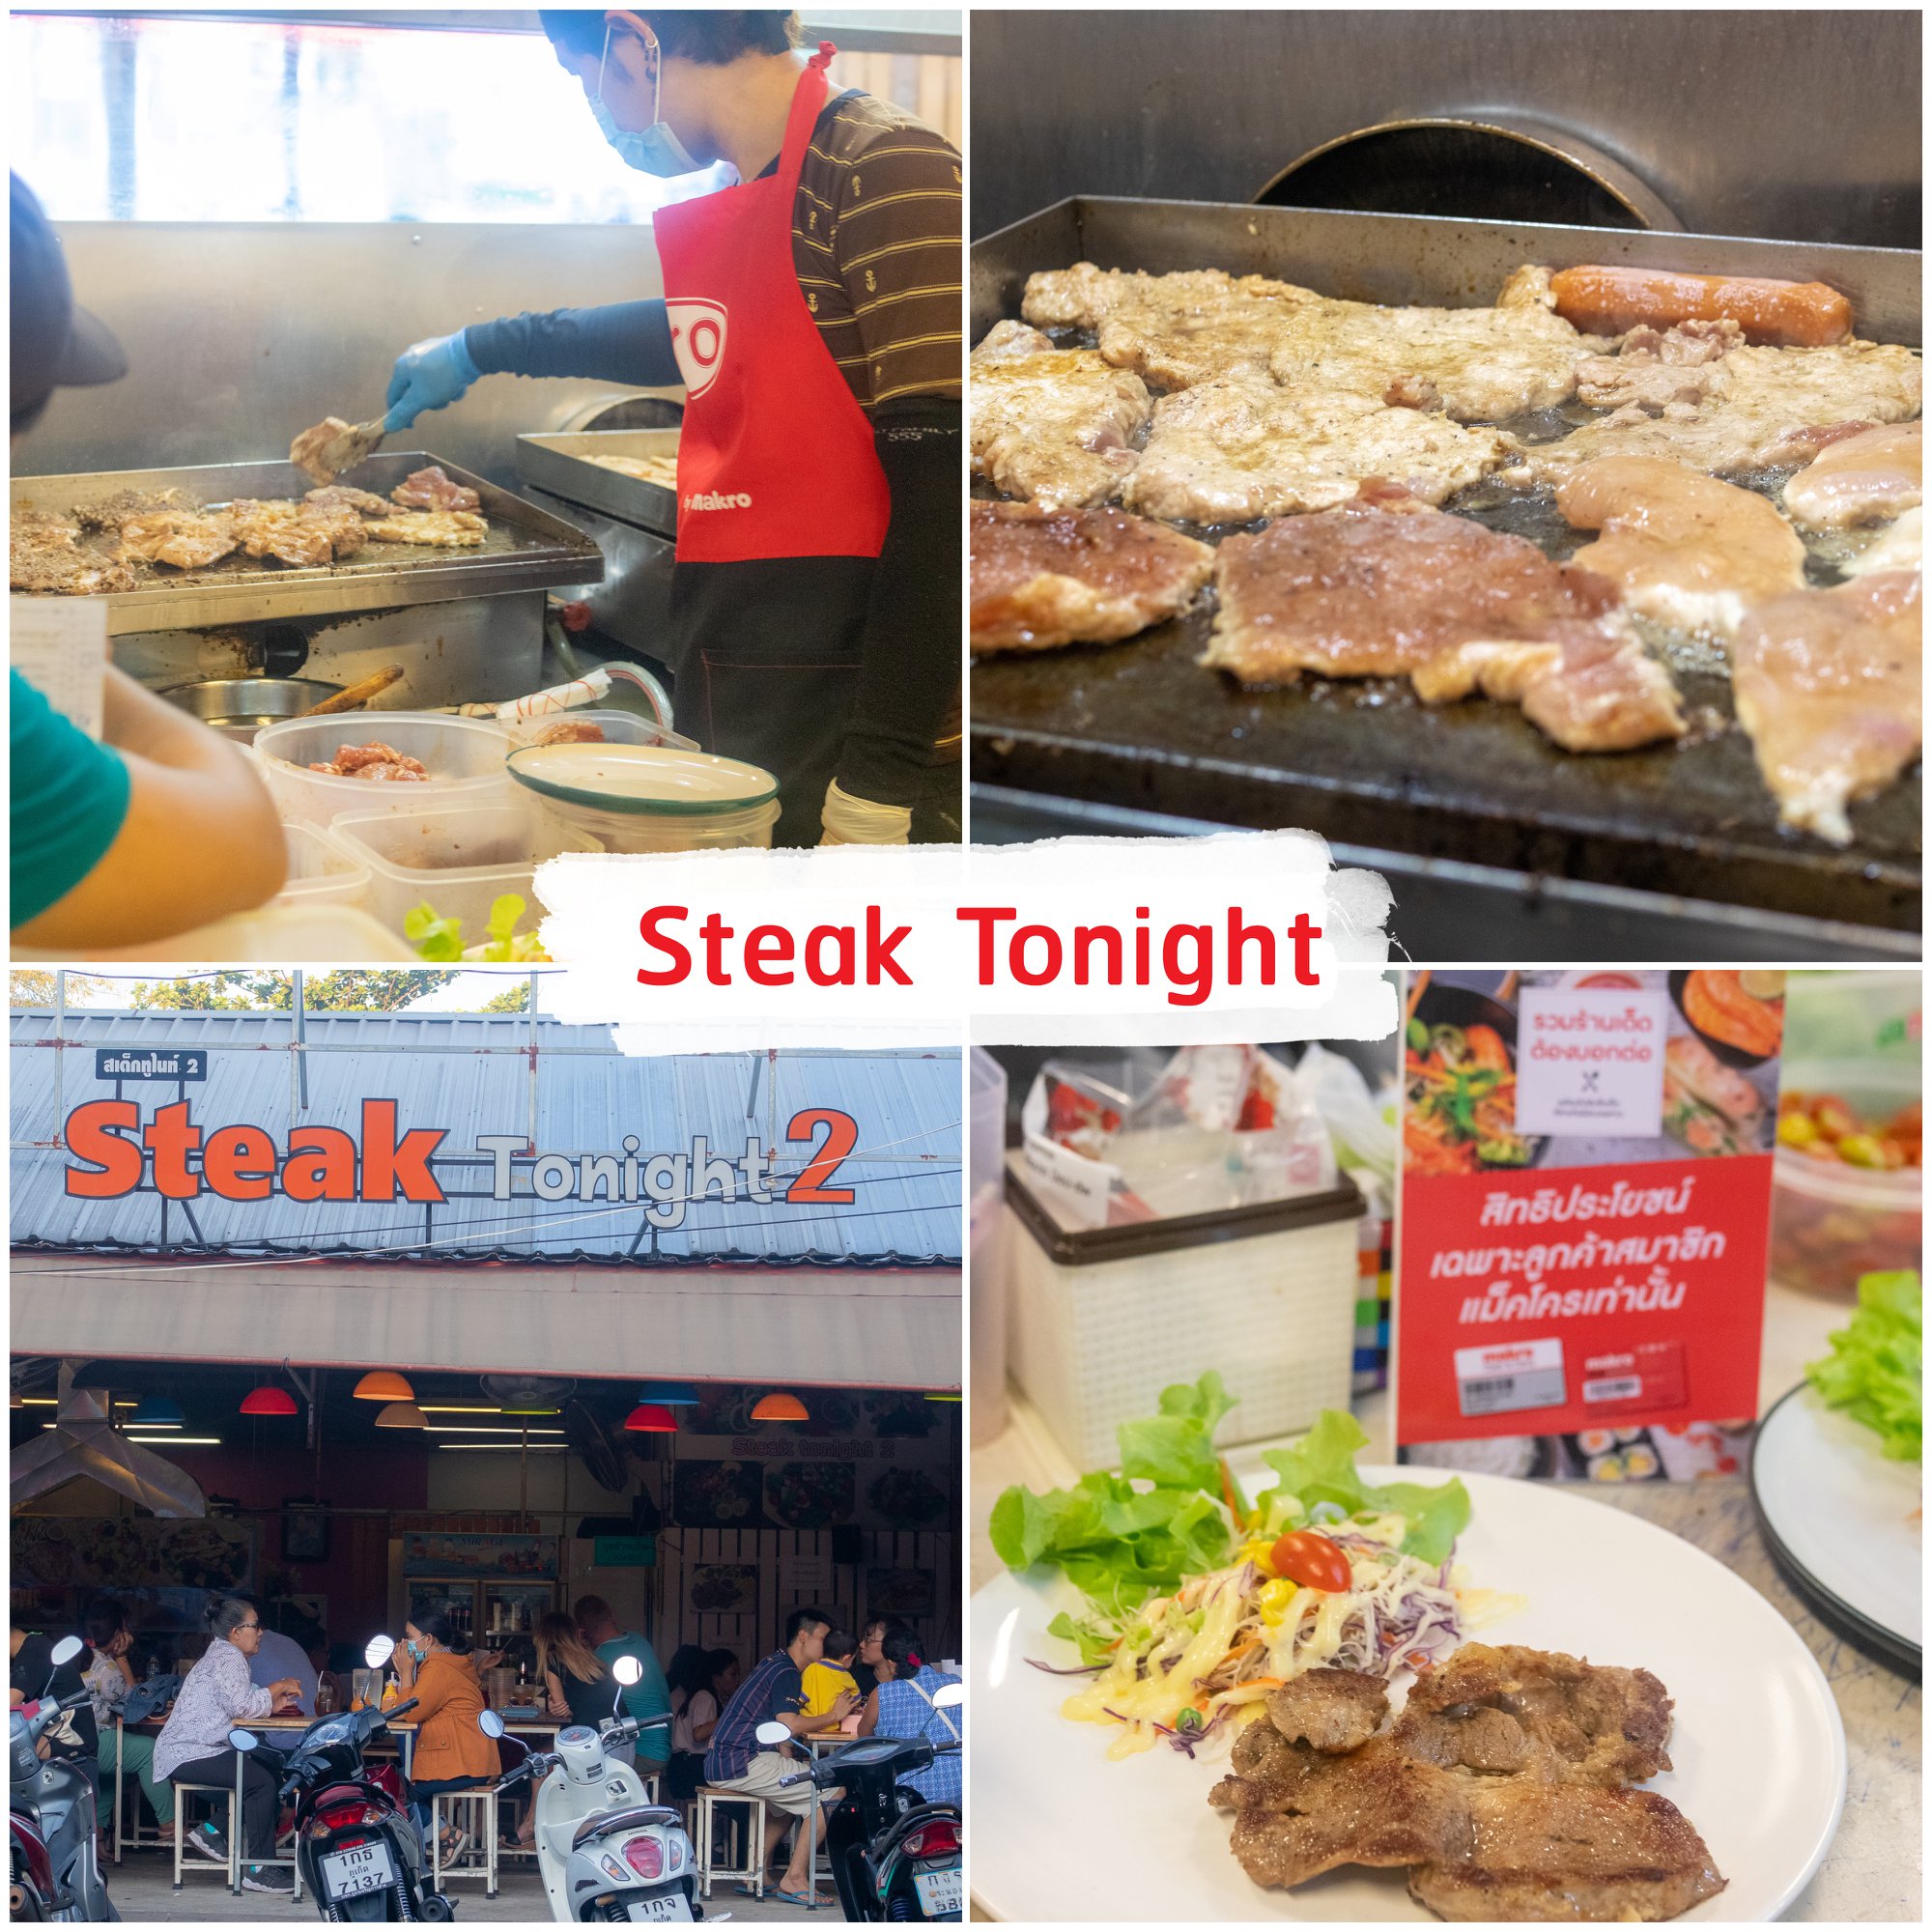 Steak-@-Tonight -ร้านเสต็กที่เหมือนธรรมดาแต่รสชาติไม่ธรรมดา-นุ่มอร่อย-ด้วยคุณกิ๊บเจ้าของร้านมีแนวทางเริ่มทำร้านสเต็กซึ่งเป็นความชอบส่วนตัว
เลยคิดริเริ่มทำท่านเองและทดลองเปิดร้านขายและได้การตอบรับเป็นอย่างดี-และได้มีการขยายสาขาถึง-4-สาขา-จุดเด่นเมนูอร่อยเด็ด-คือ-สันคอสเต็ก-พอร์คชอปสเต็ก-แซลลมอนสเต็กที่เสริฟพร้อมกับสลัดผักขนมปังกะเทียมเฟรนฟราย
ราคาไม่แพง-ทางร้านเน้นปรุงสุกเมนูต่อเมนู-น้ำสเต็กเป็นสตูรที่ทางร้านปรุงแต่งขั้นมาเอง-จึงทำให้มีรสชาติที่แตกต่างกว่าสเต็กที่อื่นๆ ภูเก็ต,ร้านอาหารภูเก็ต,ร้านอร่อยภูเก็ต